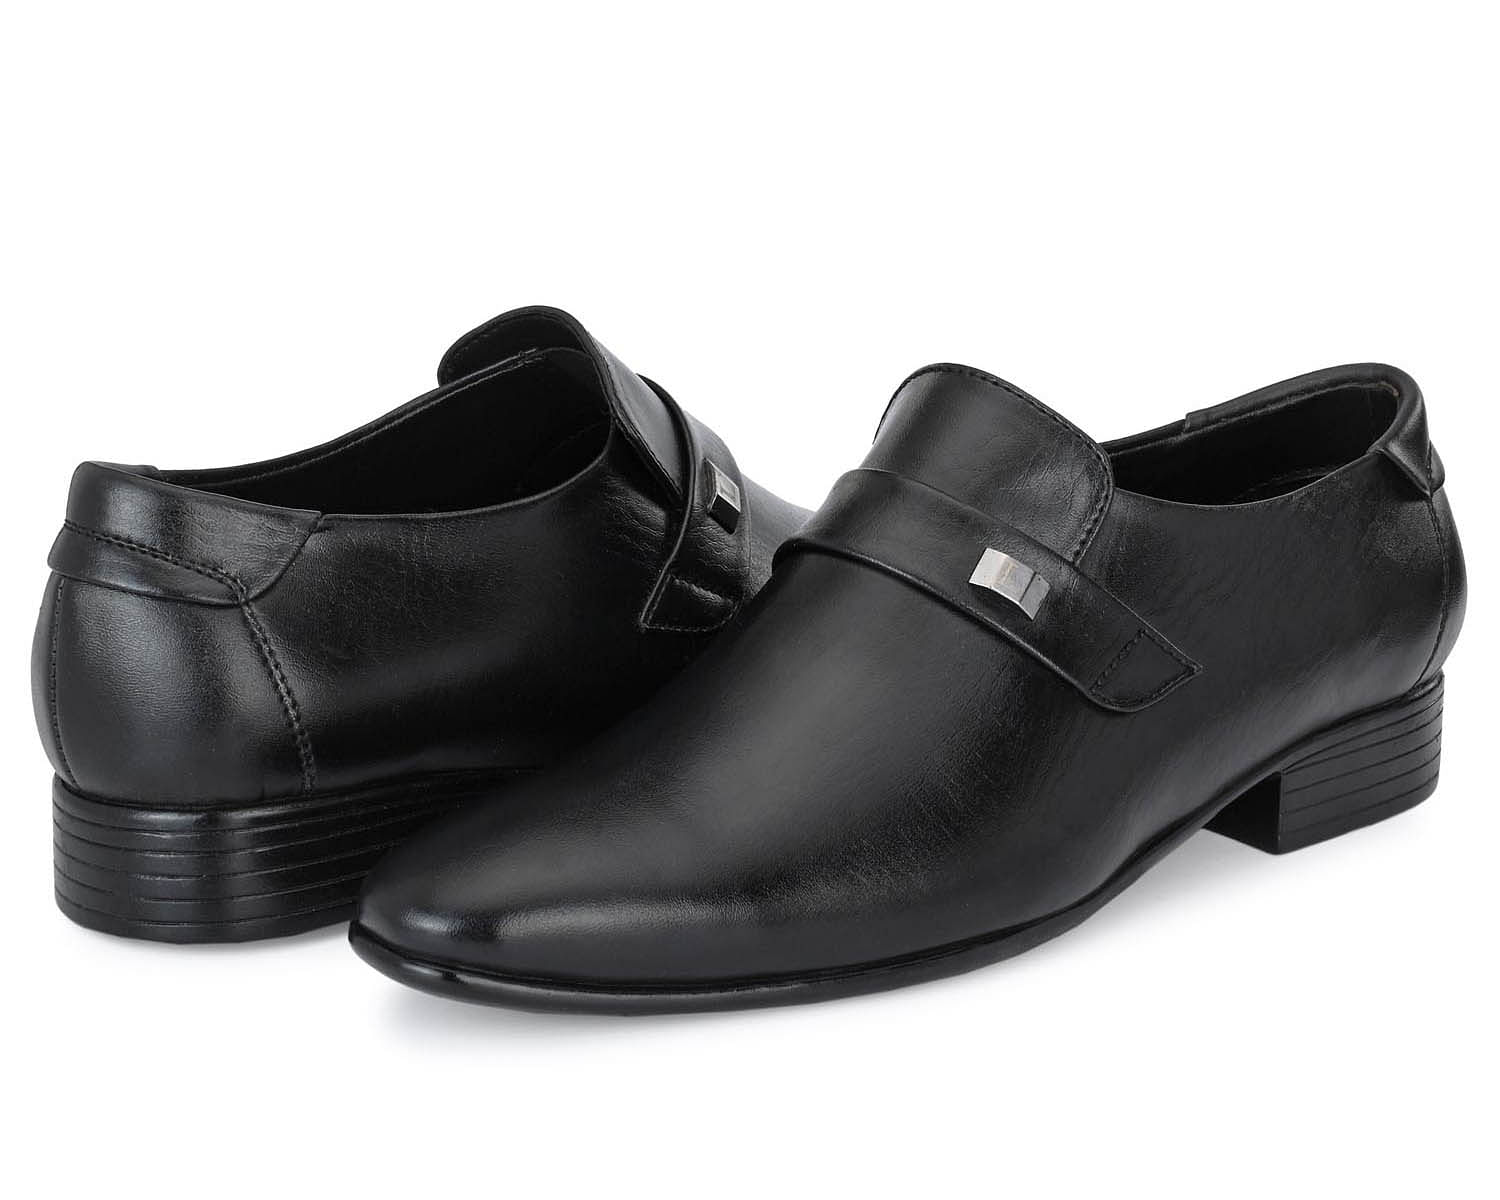 Pair-it Men moccasin Formal Shoes - Black - LZ-RYDER-111